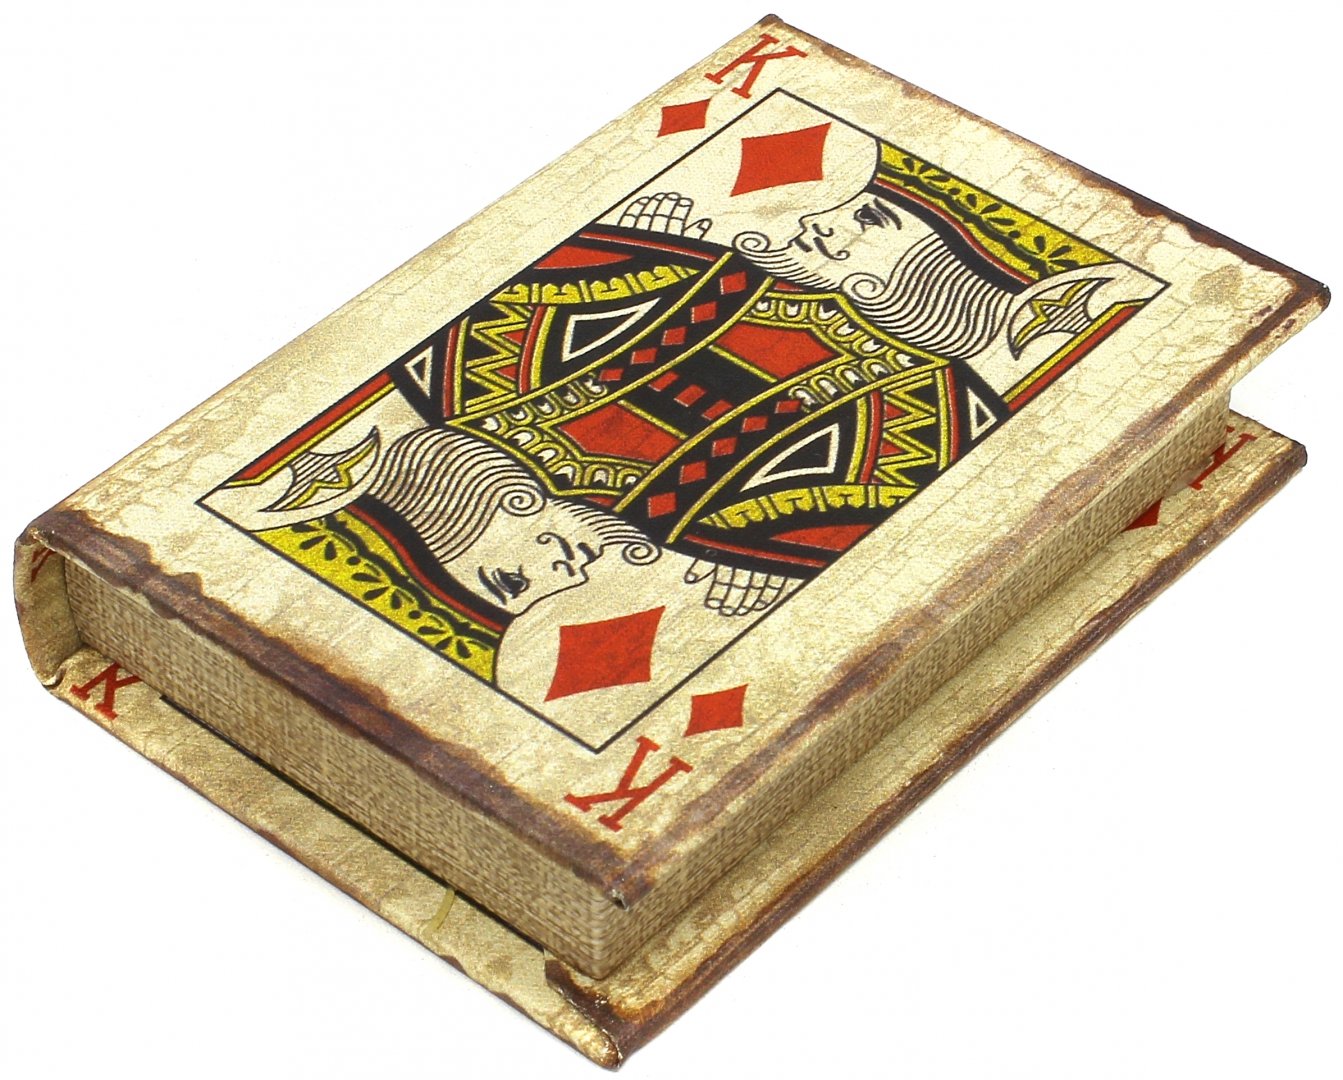 Купить наборы карт. Набор игральных карт. Игральные карты подарочный набор. Деревянная коробка для игральных карт. Деревянные коробочки для игральных карт.